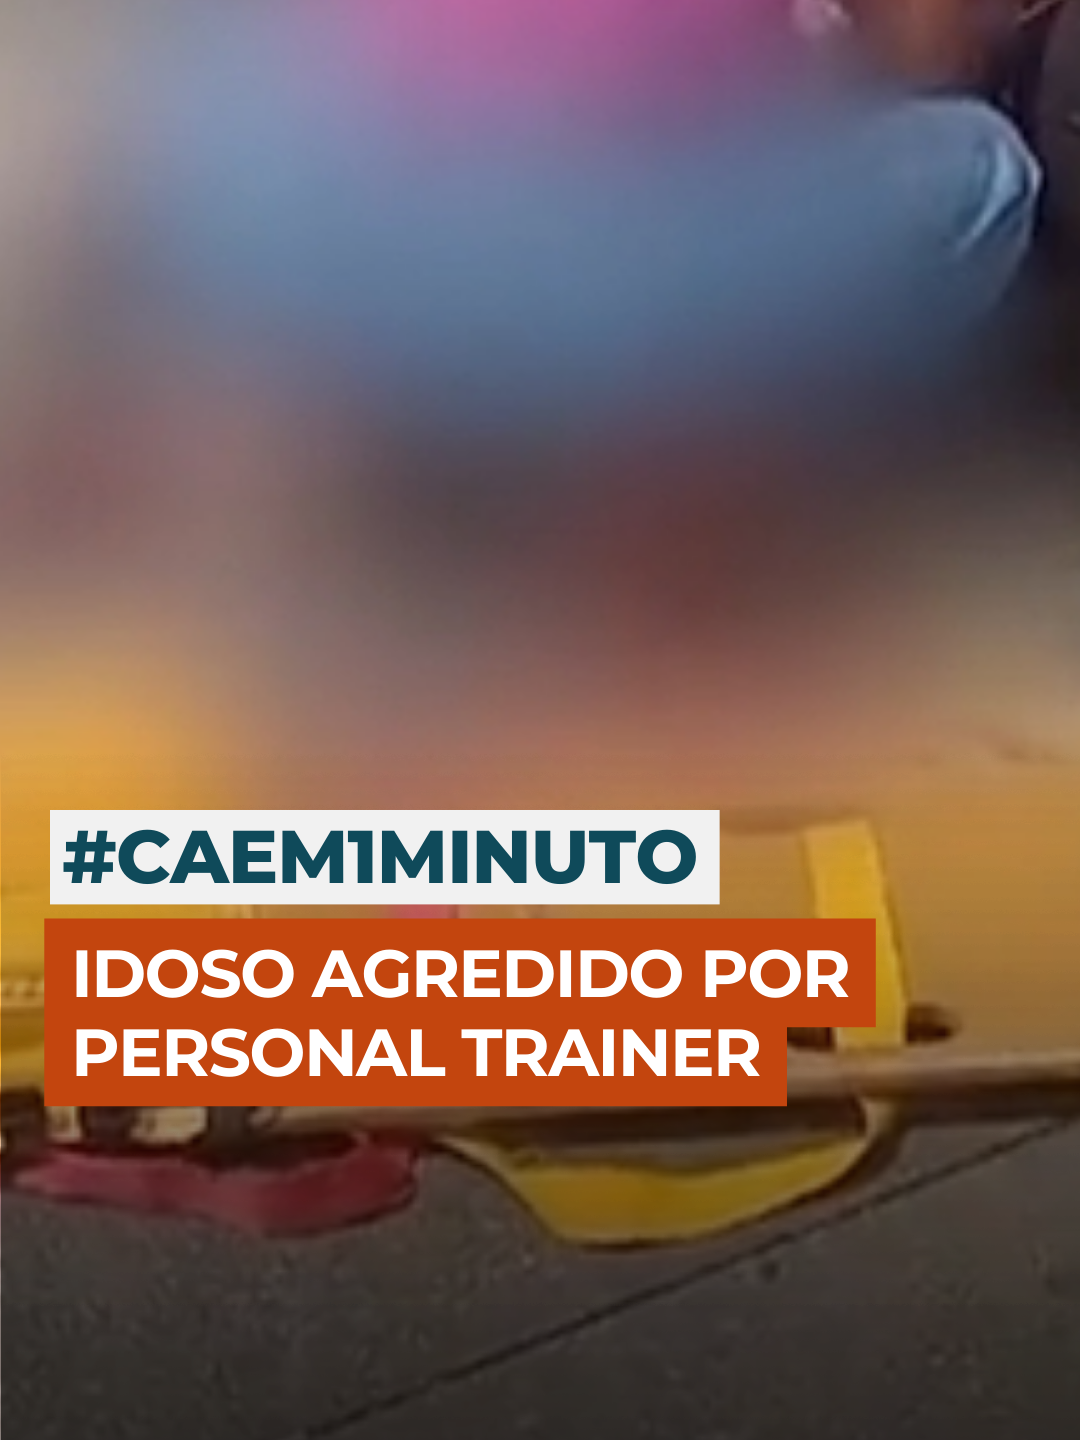 No #CAEm1Minuto, Fabíola Corrêa resume o caso de um idoso que quase acabou morto em uma briga com um personal trainer. Entenda o que aconteceu 🕑